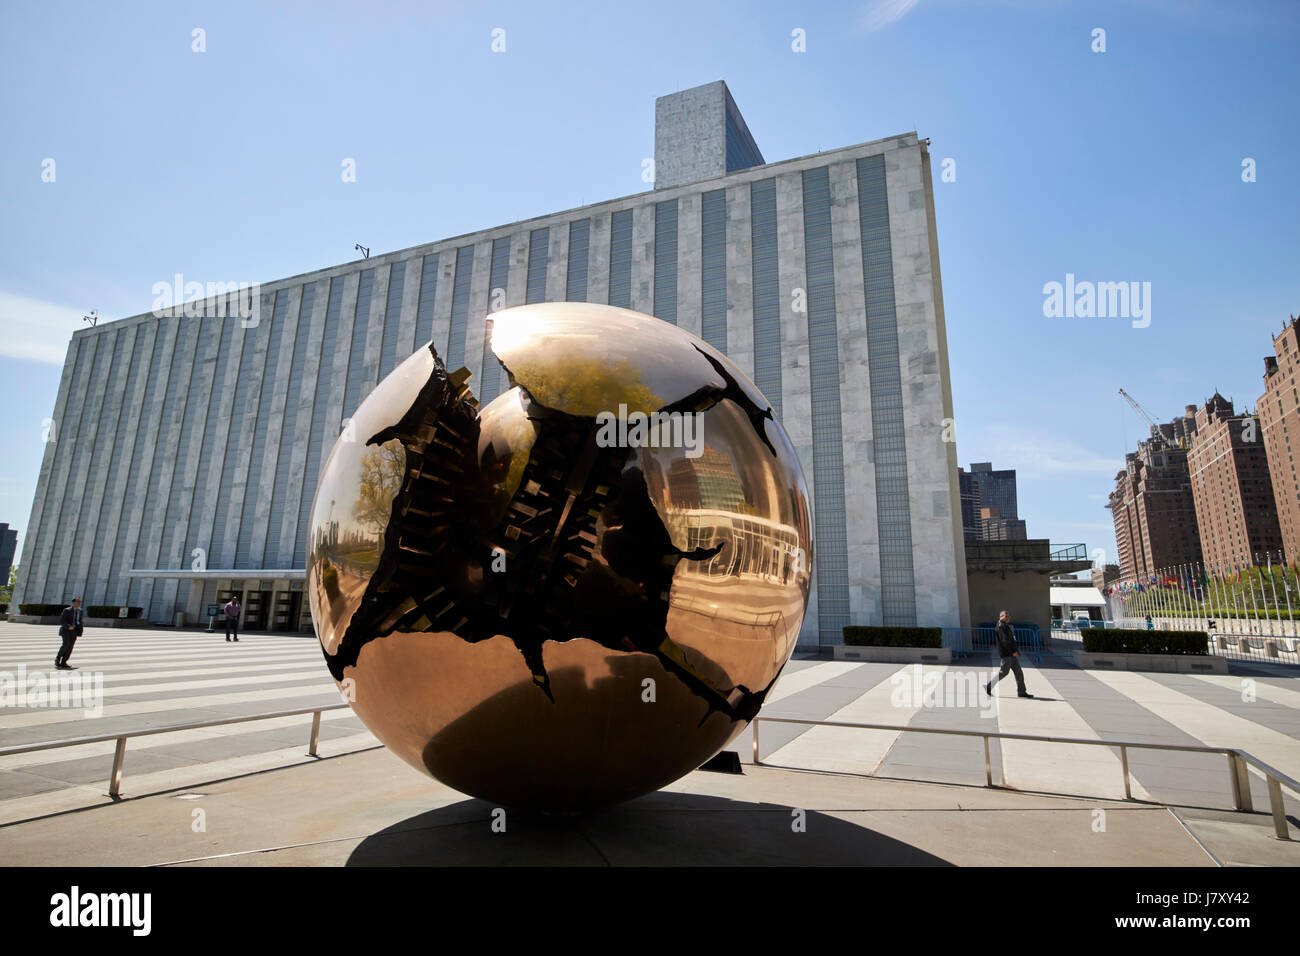 Sfera entro una sfera scultura al di fuori del gruppo generali edificio delle Nazioni Unite Headquarters Building di New York City STATI UNITI D'AMERICA Foto Stock